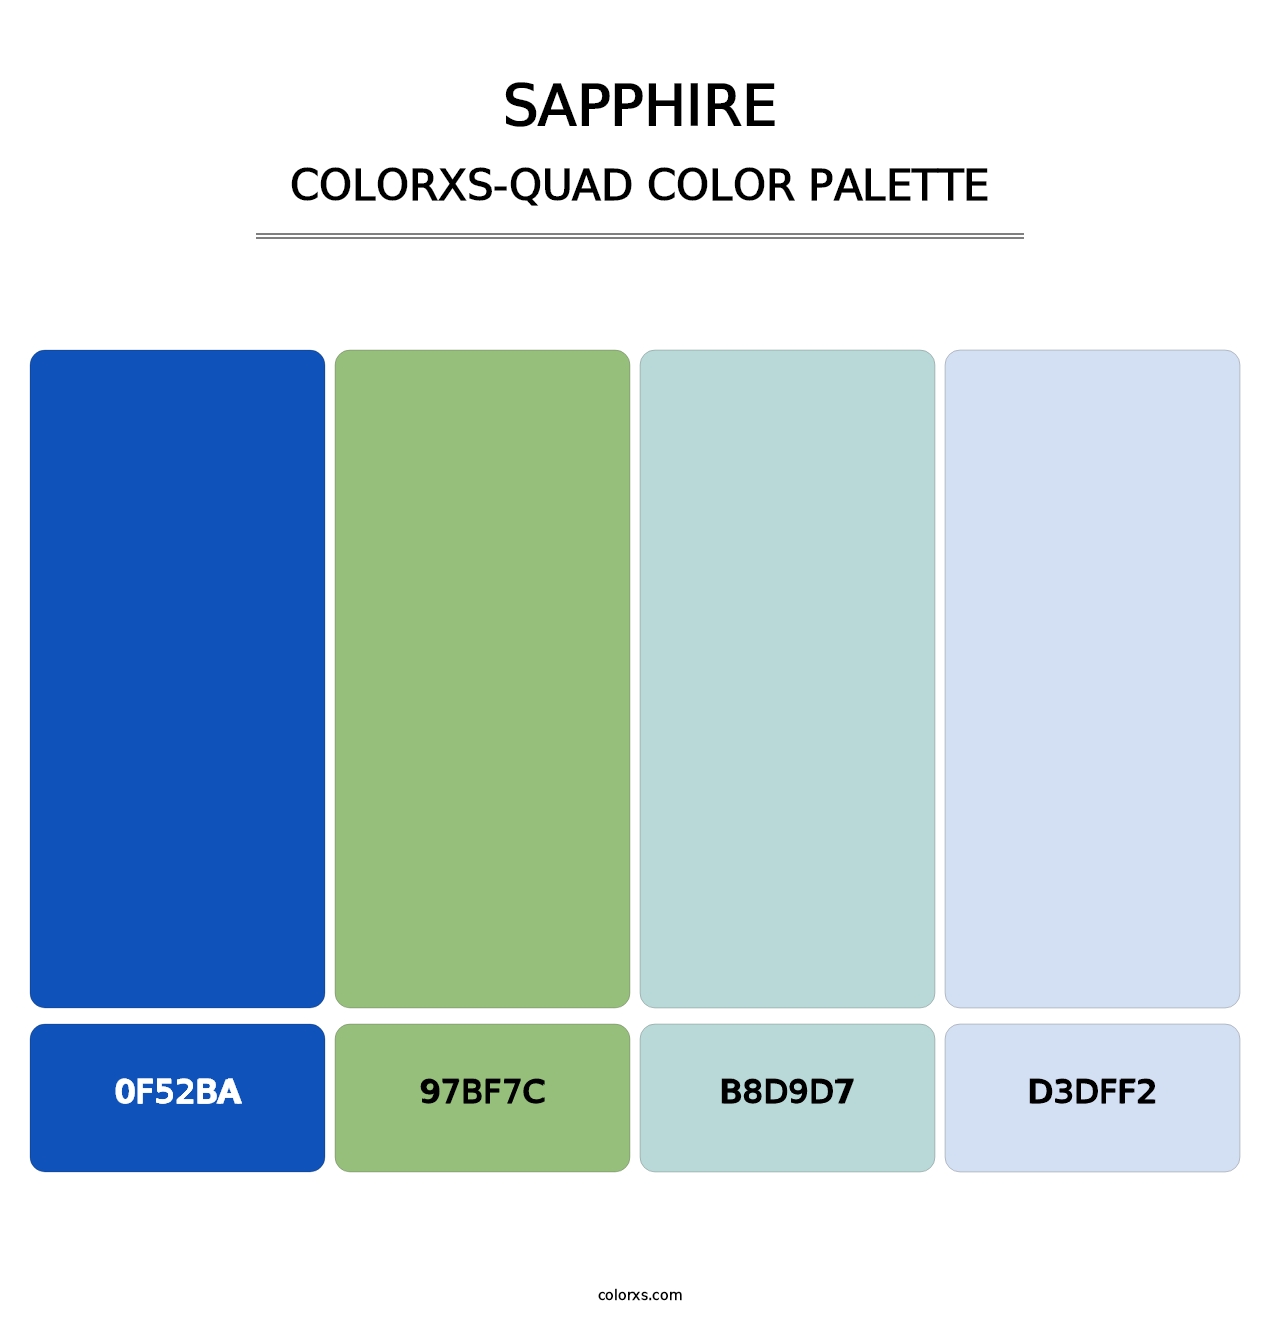 Sapphire - Colorxs Quad Palette